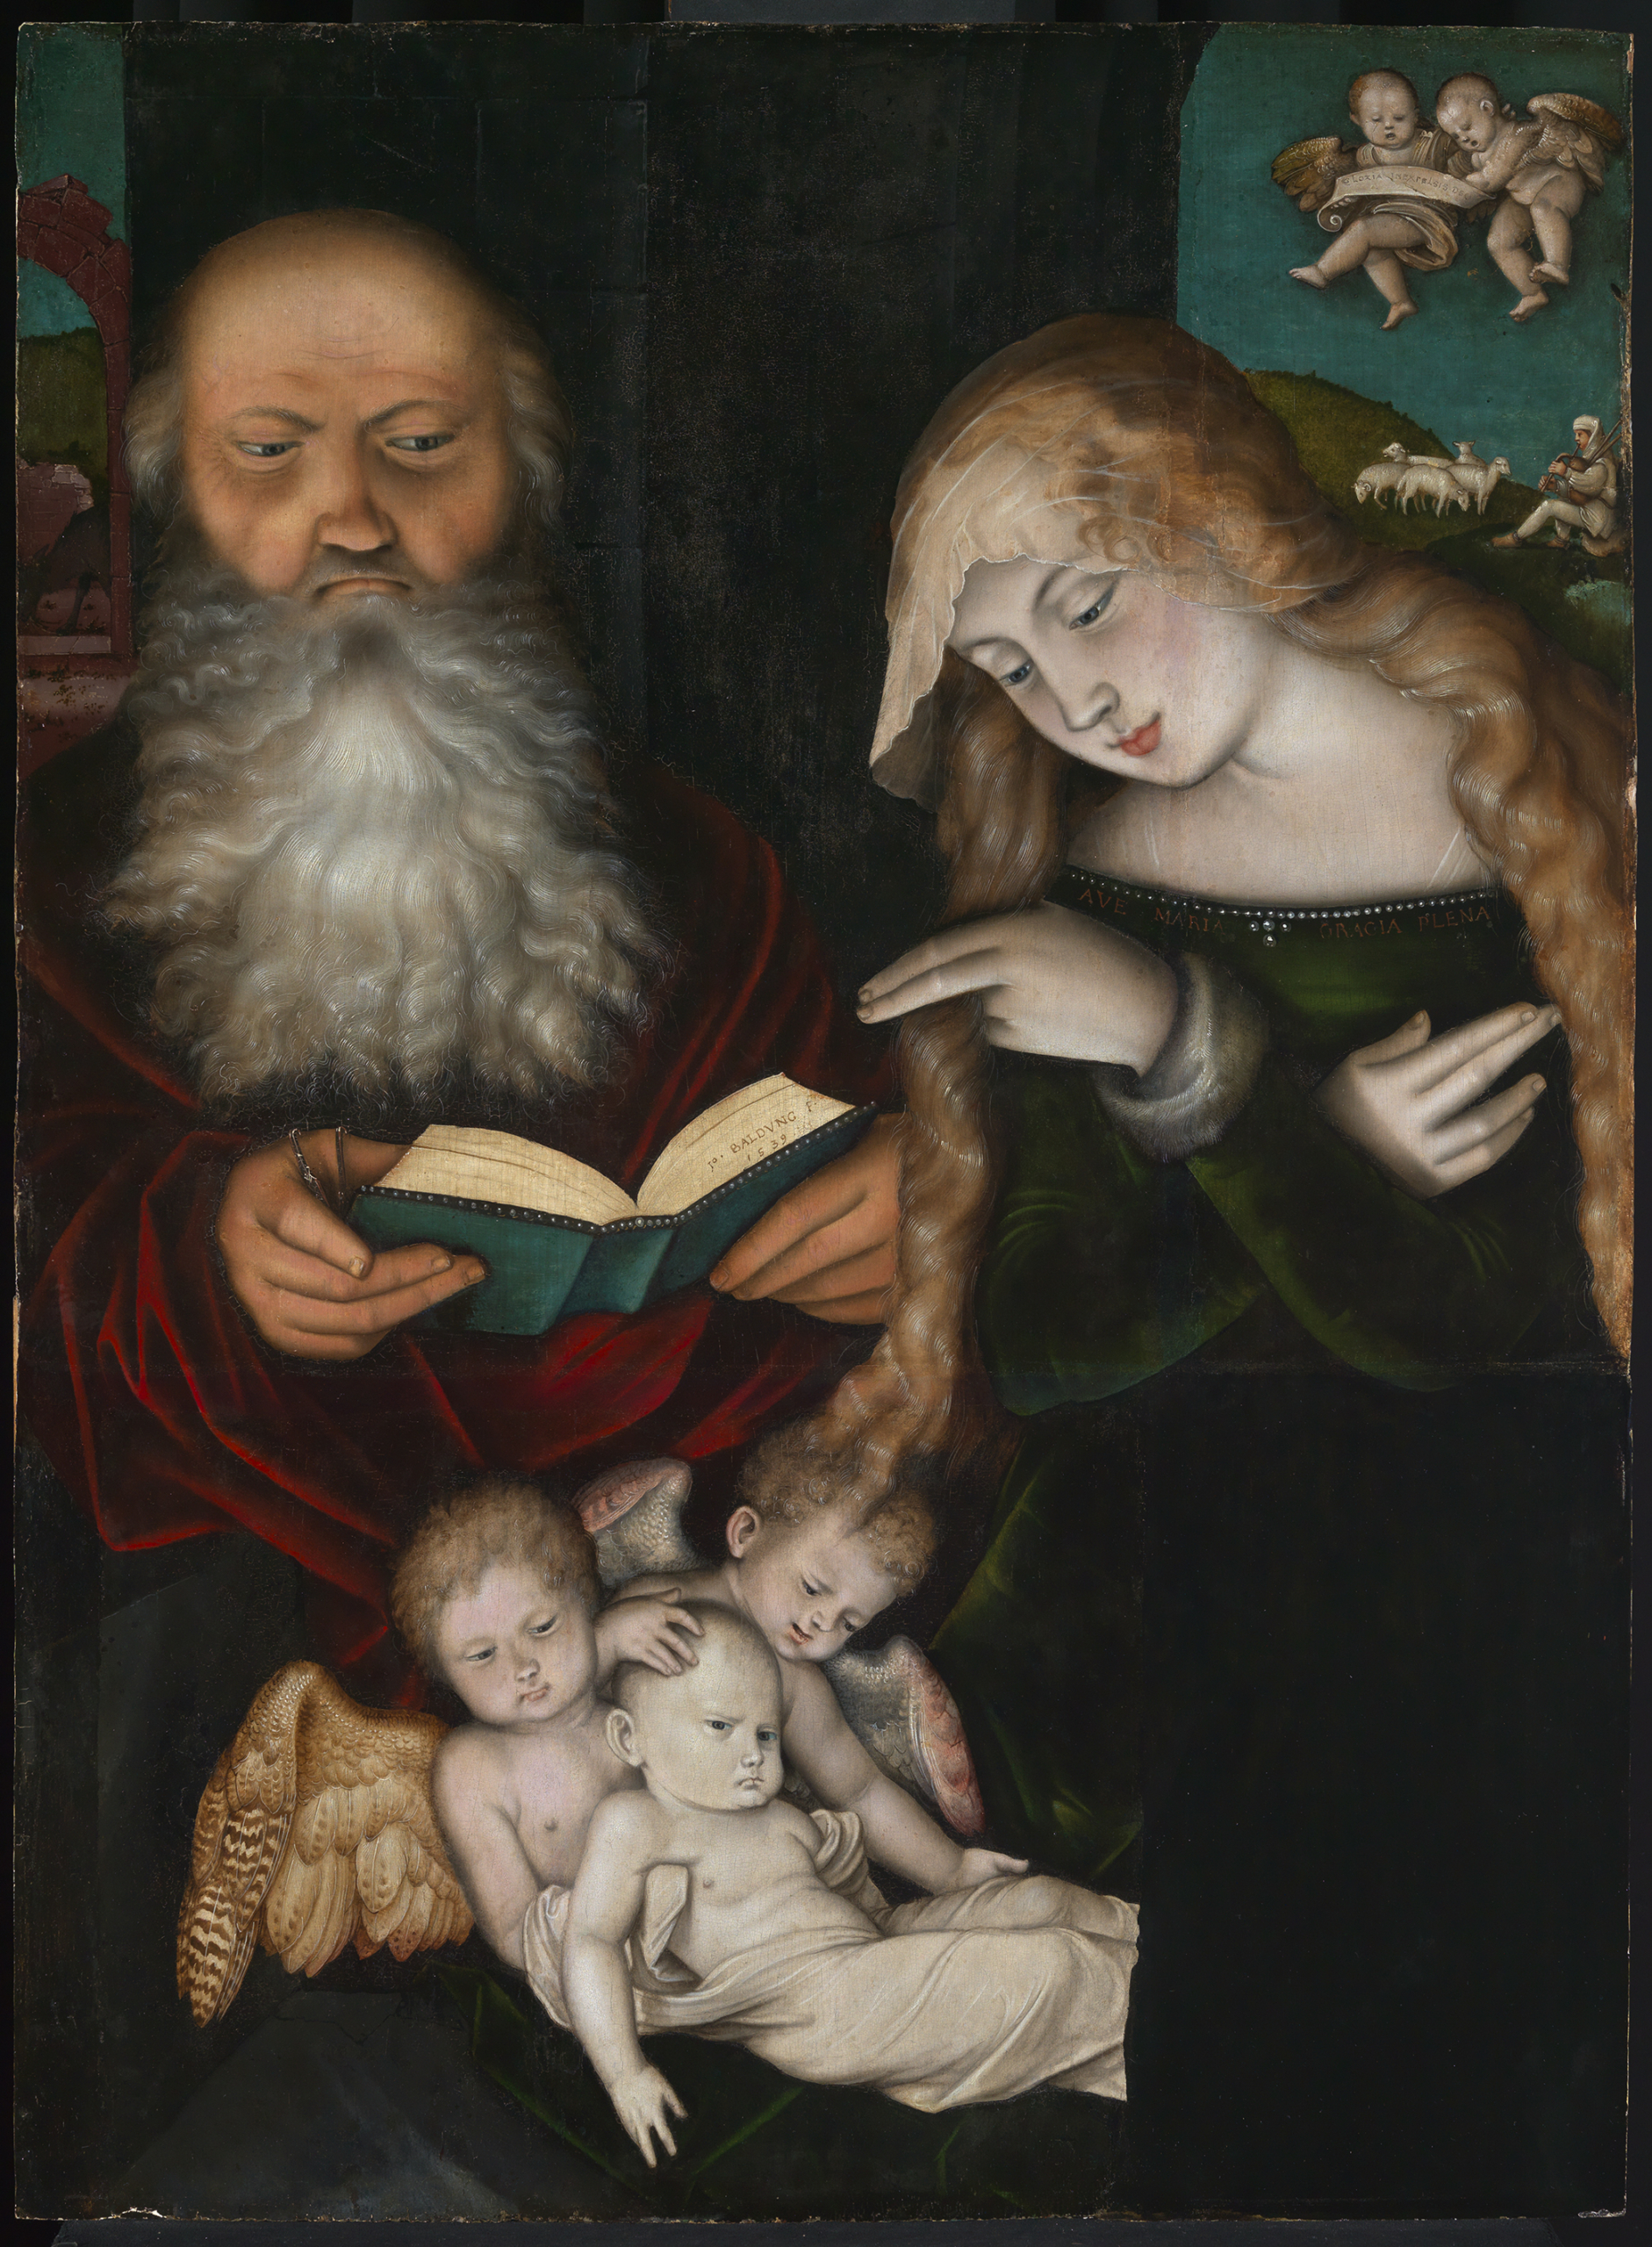 Abbildung des Gemäldes "Geburt Christi" von Hans Baldung. Zu erkennen sind Maria und Josef, sowie zwei Engel und das Jesuskind.